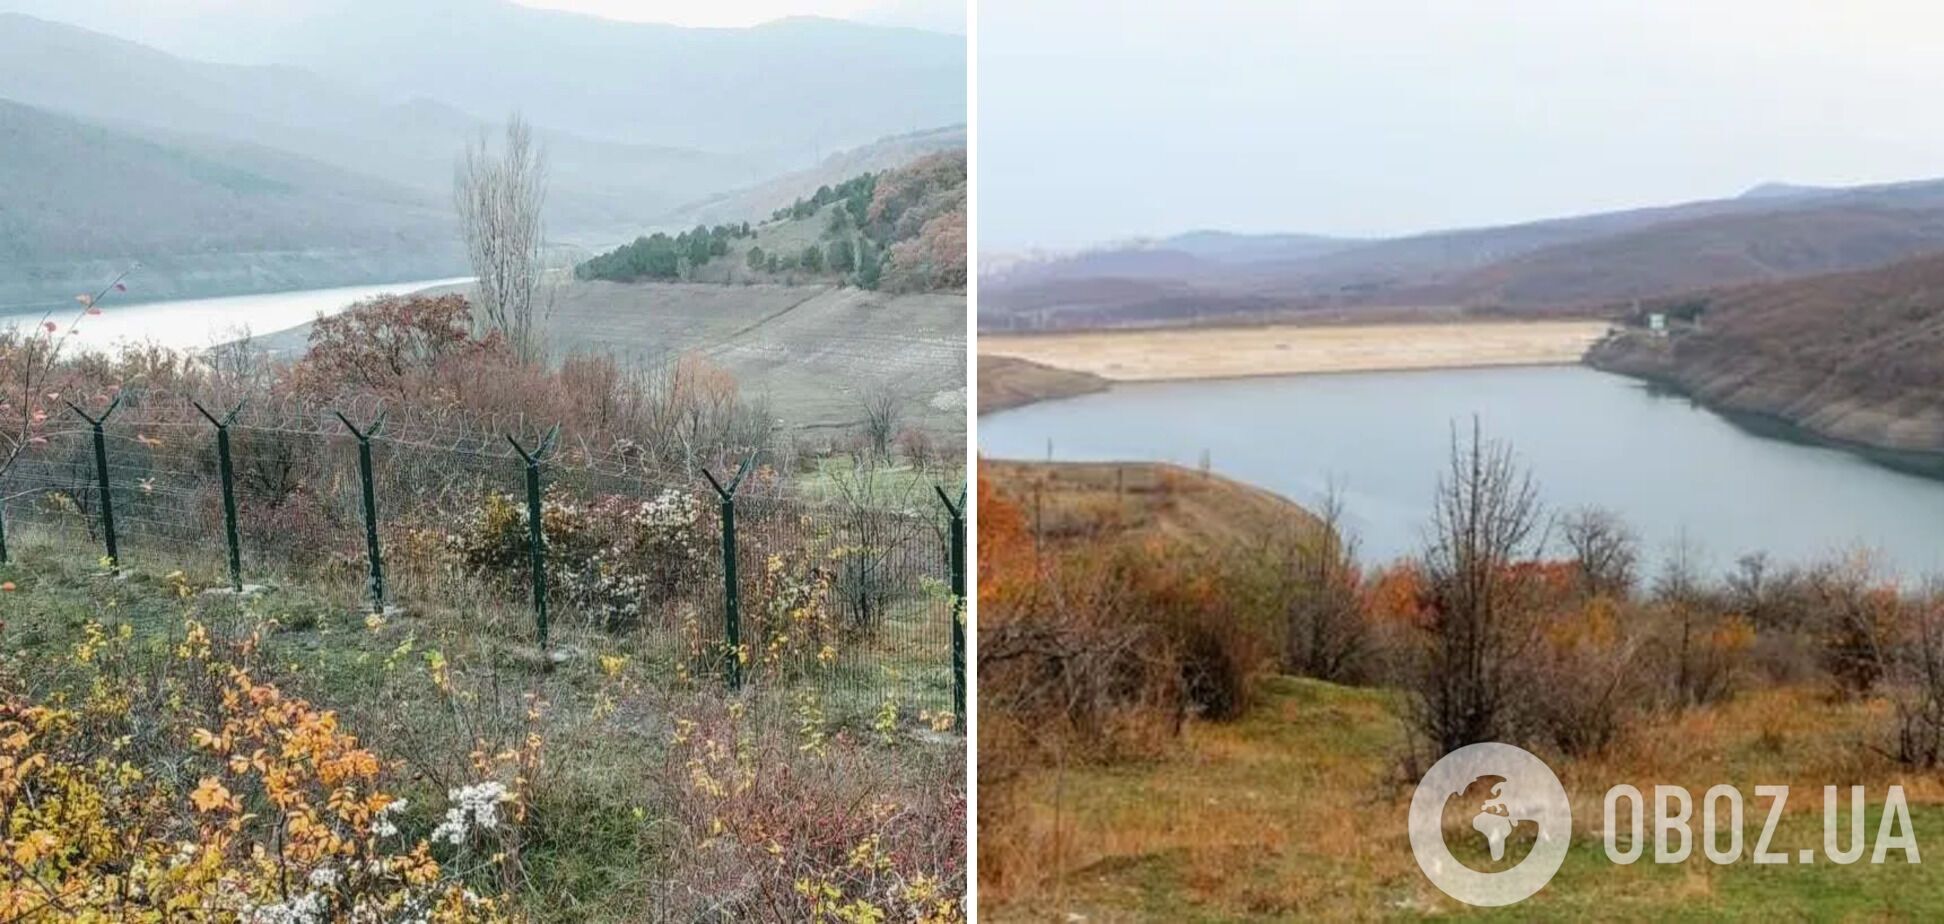 Ранее Изобильненское водохранилище было самым глубоким в Крыму